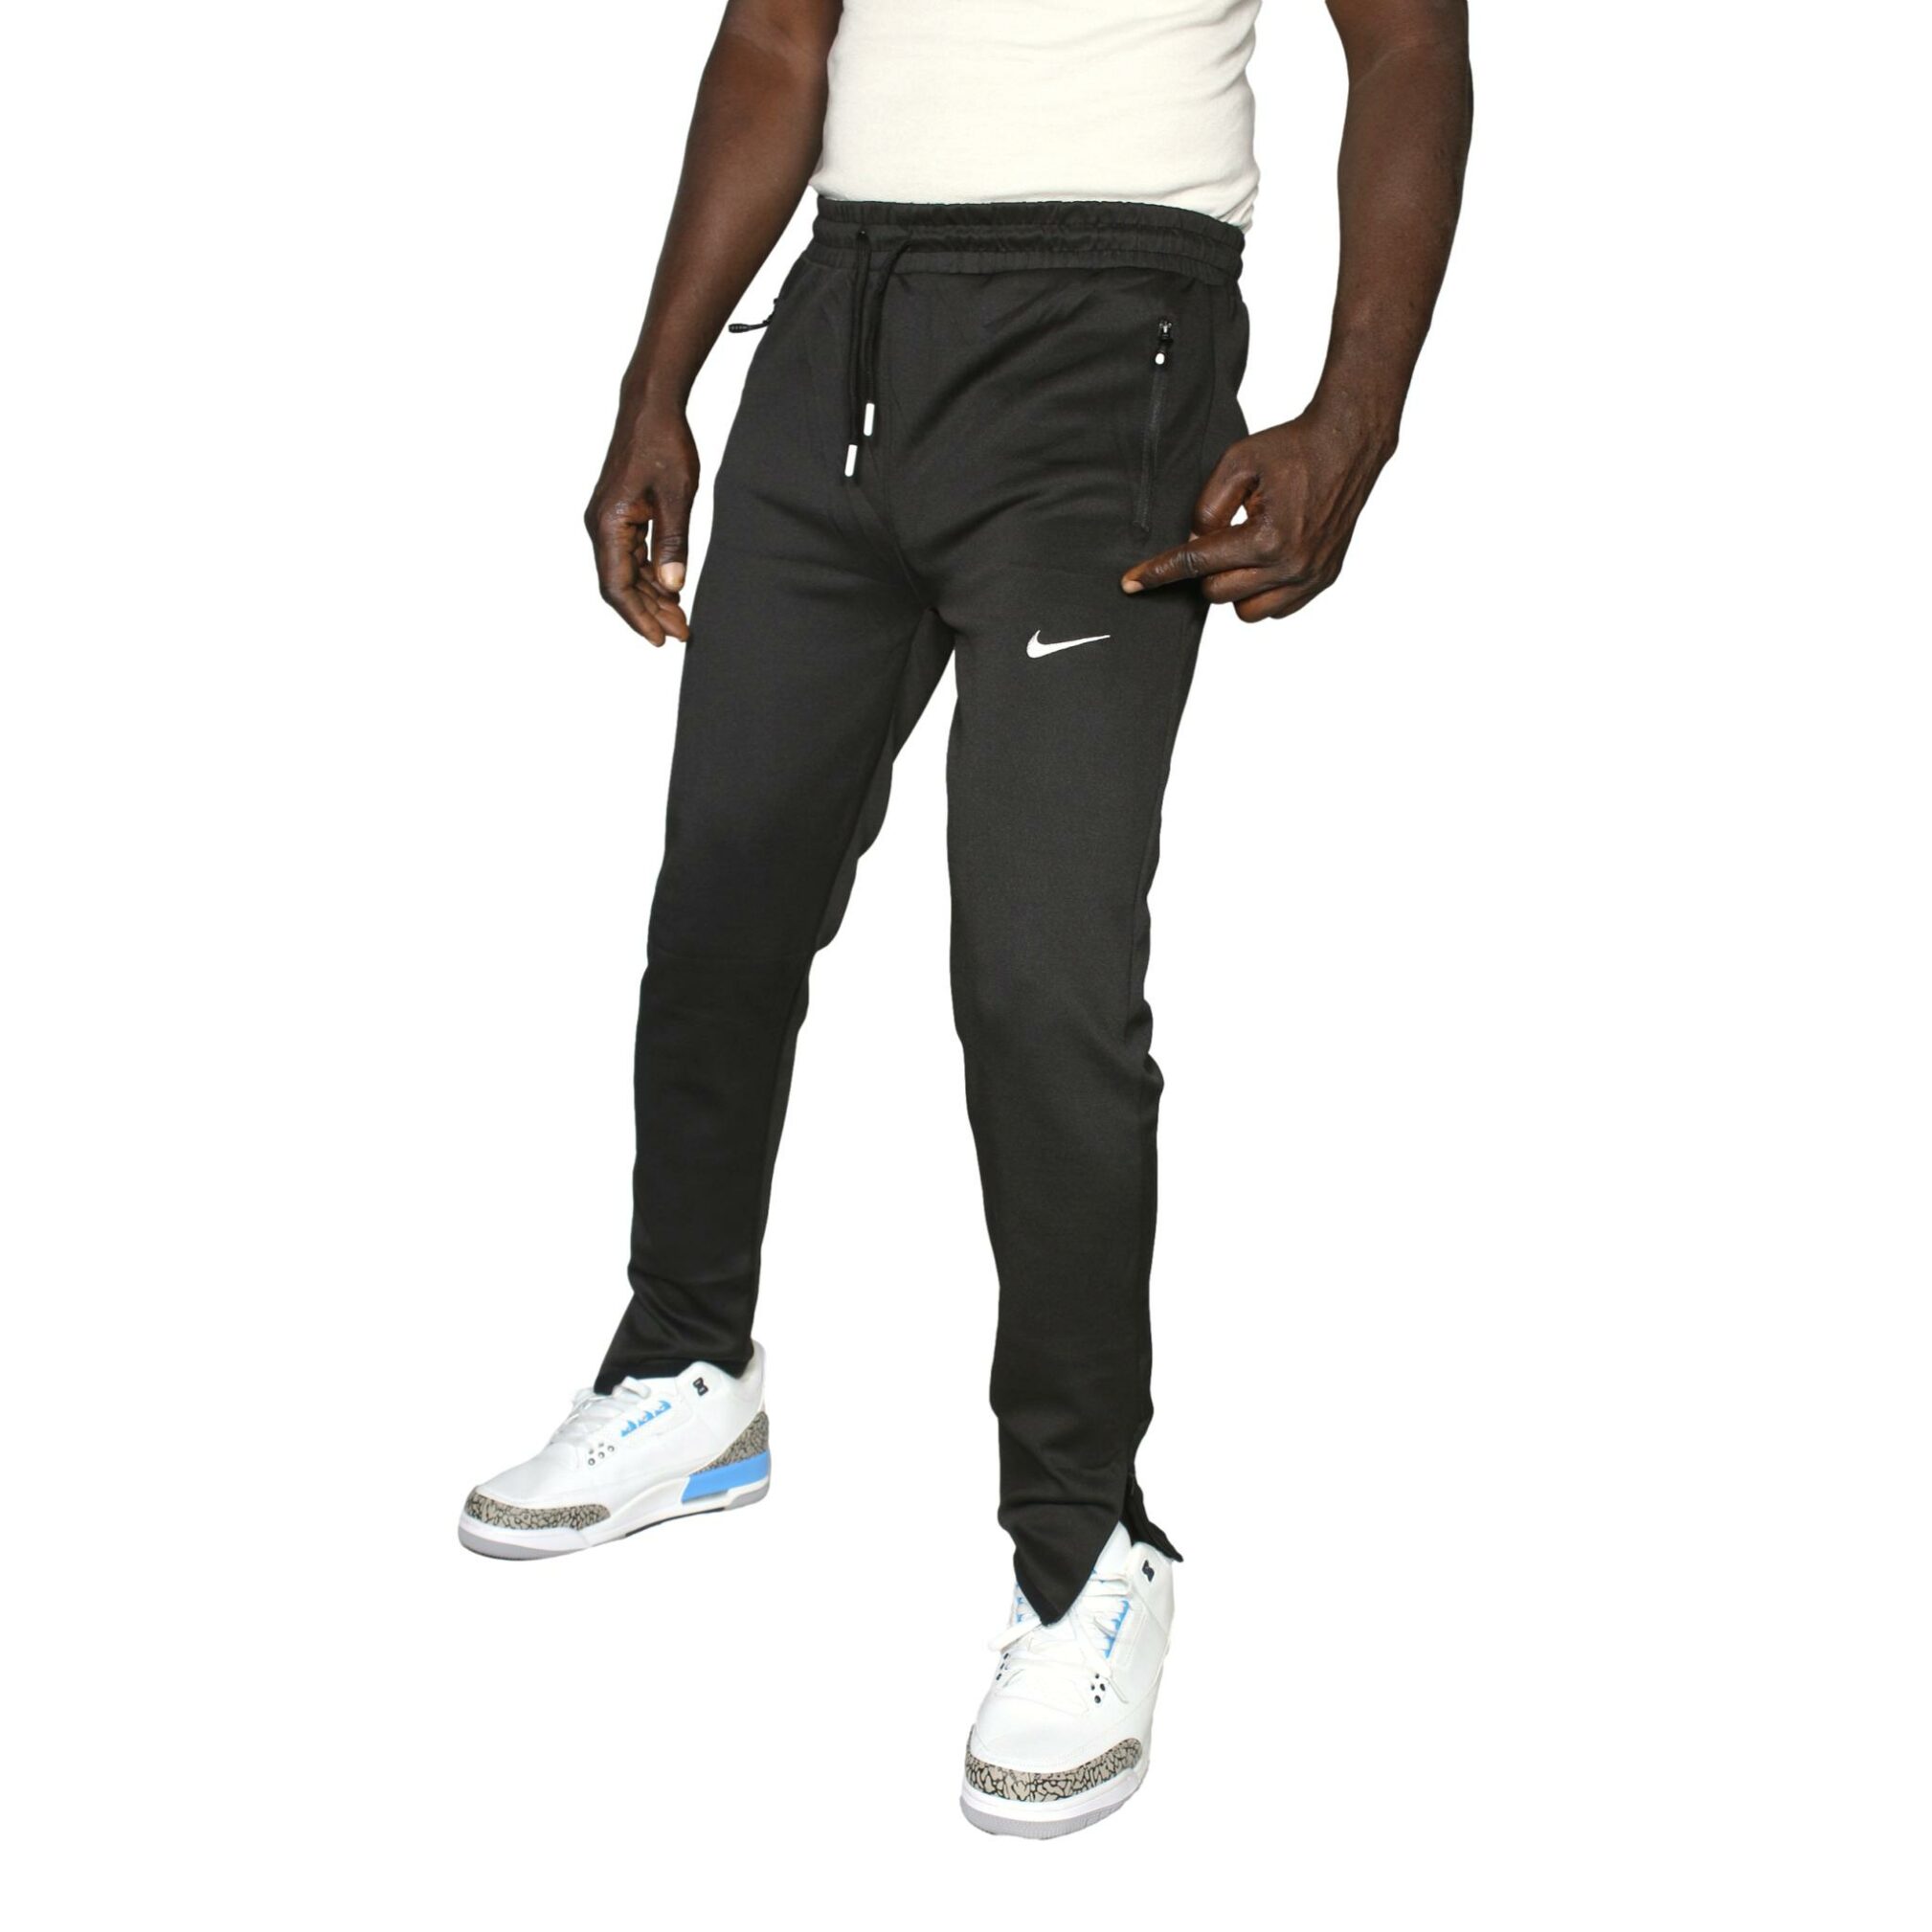 Pantalon jogging Nike Homme